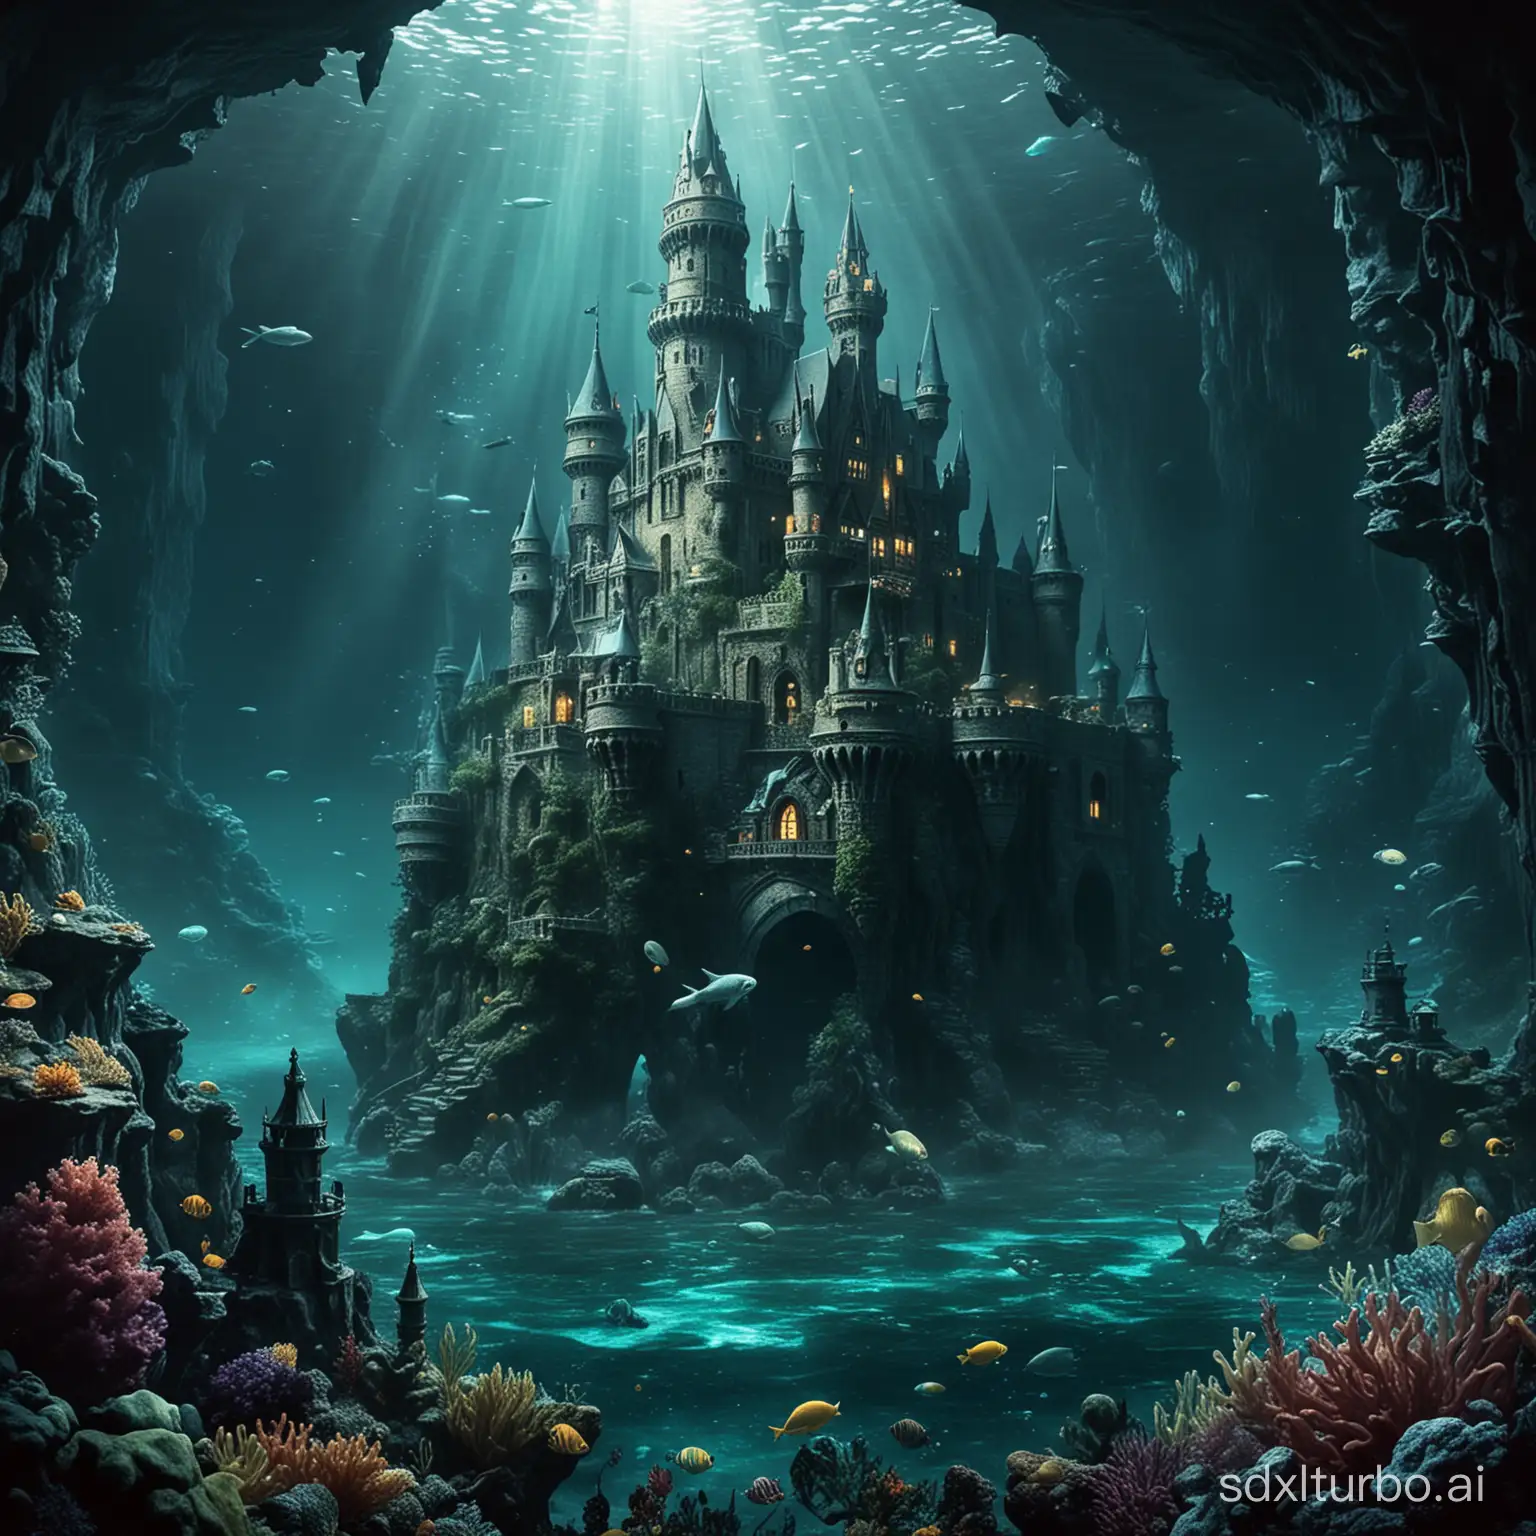 Deep sea, castle, mermaid